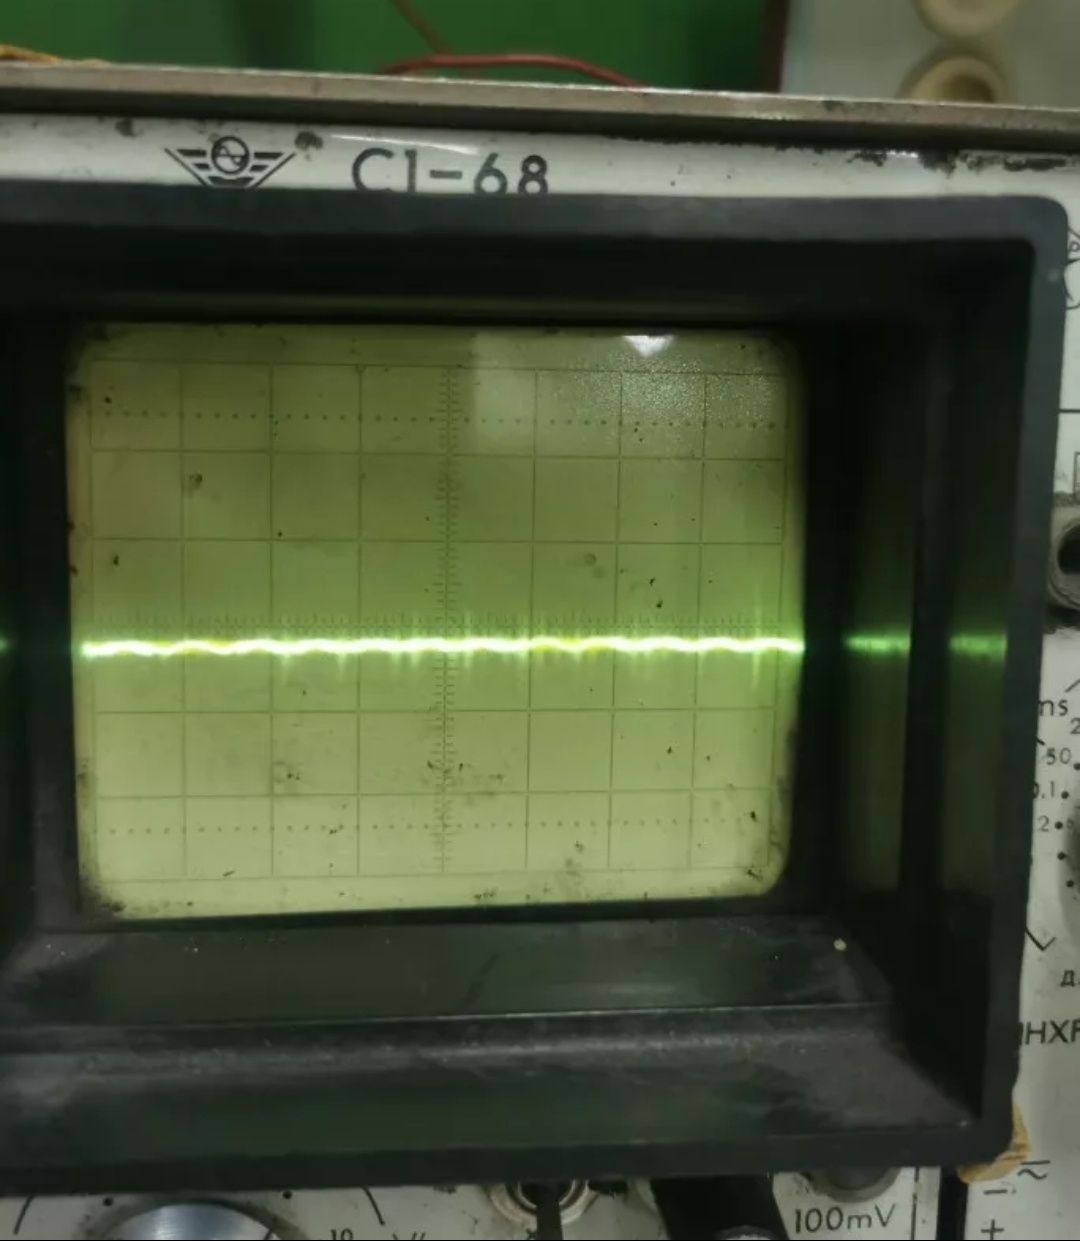 Гальваническая развязка, фильтр сглаживания пульсаций. Подавление шума